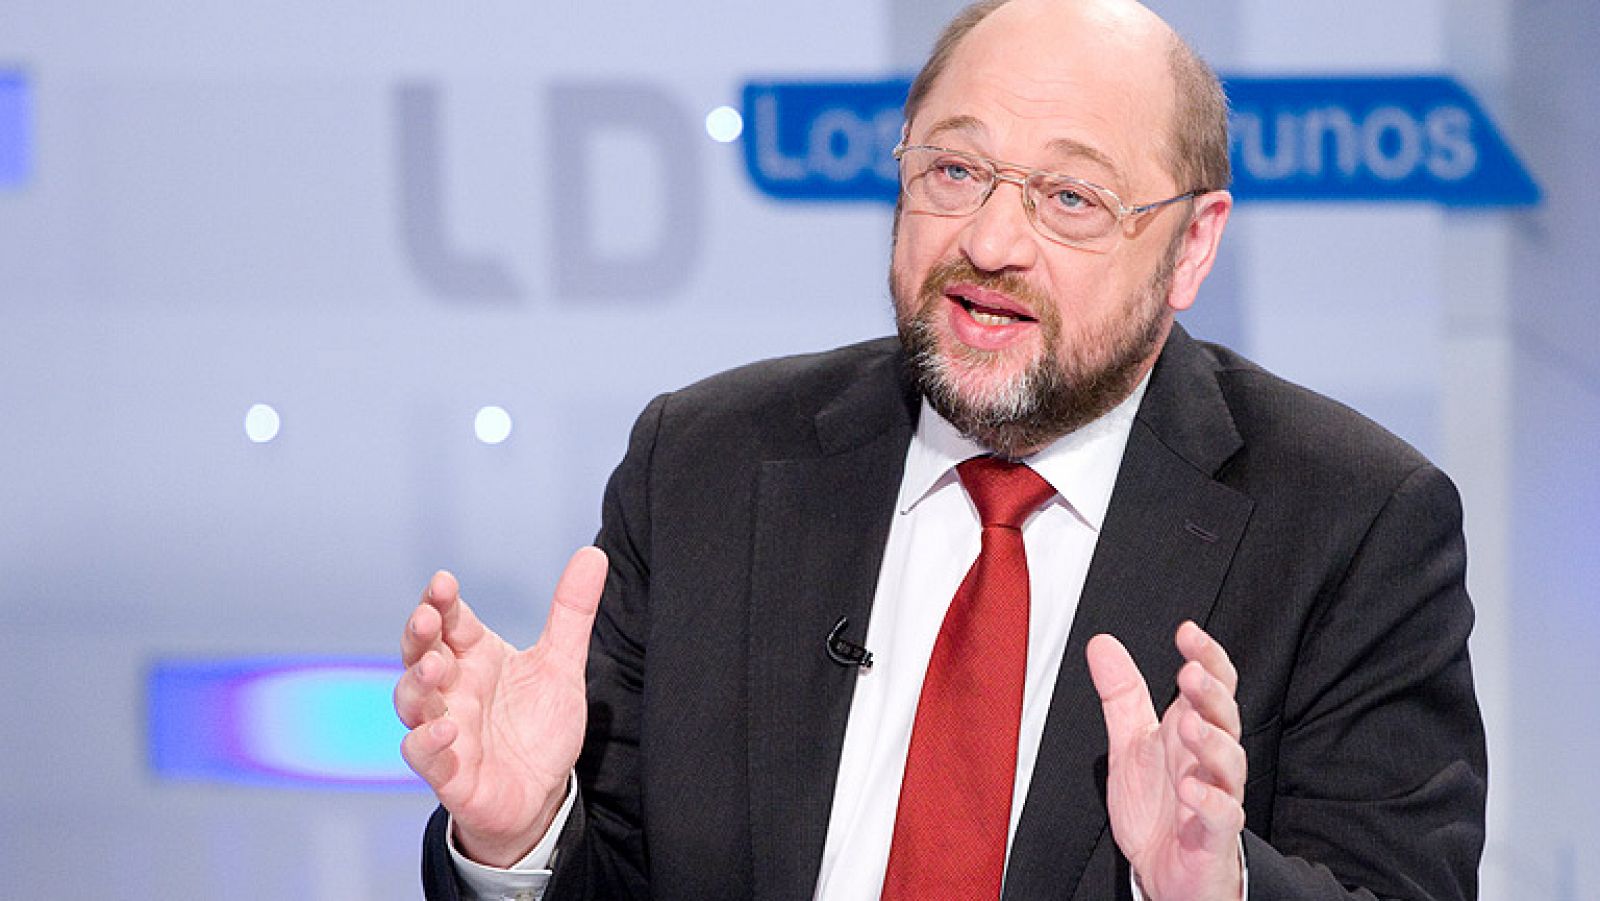 Martin Schulz: "Disciplina sí, pero hay que invertir en crecimiento y empleo"